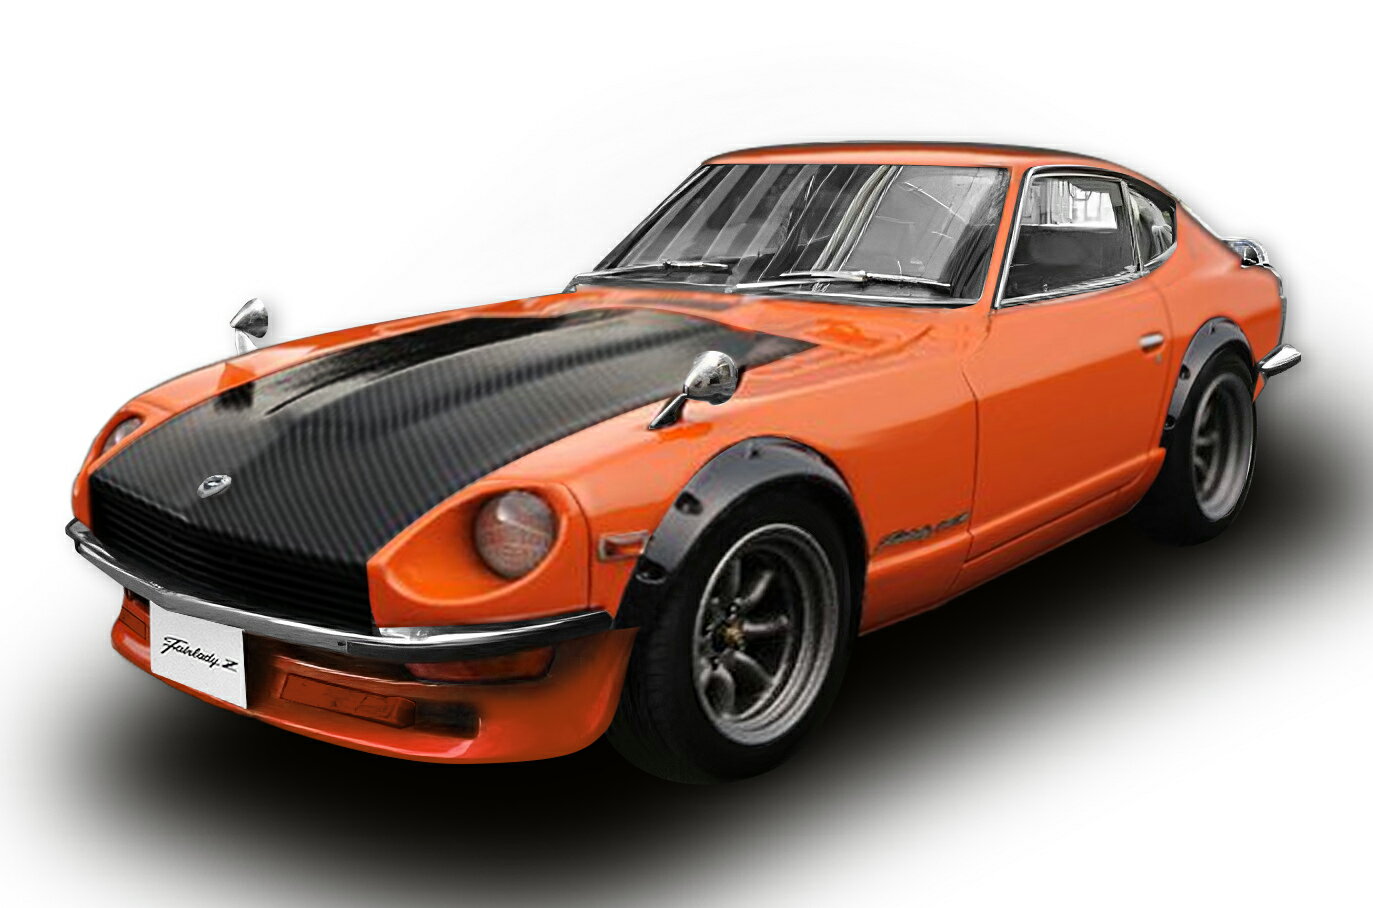 Sun Star サンスター 1/18 ミニカー ダイキャストモデル 1970年モデル 日産 Nissan Fairlady Z (S30) 1970 RHD 右ハンドル仕様 Orange/Carbon bonnet オレンジ カーボンボンネット